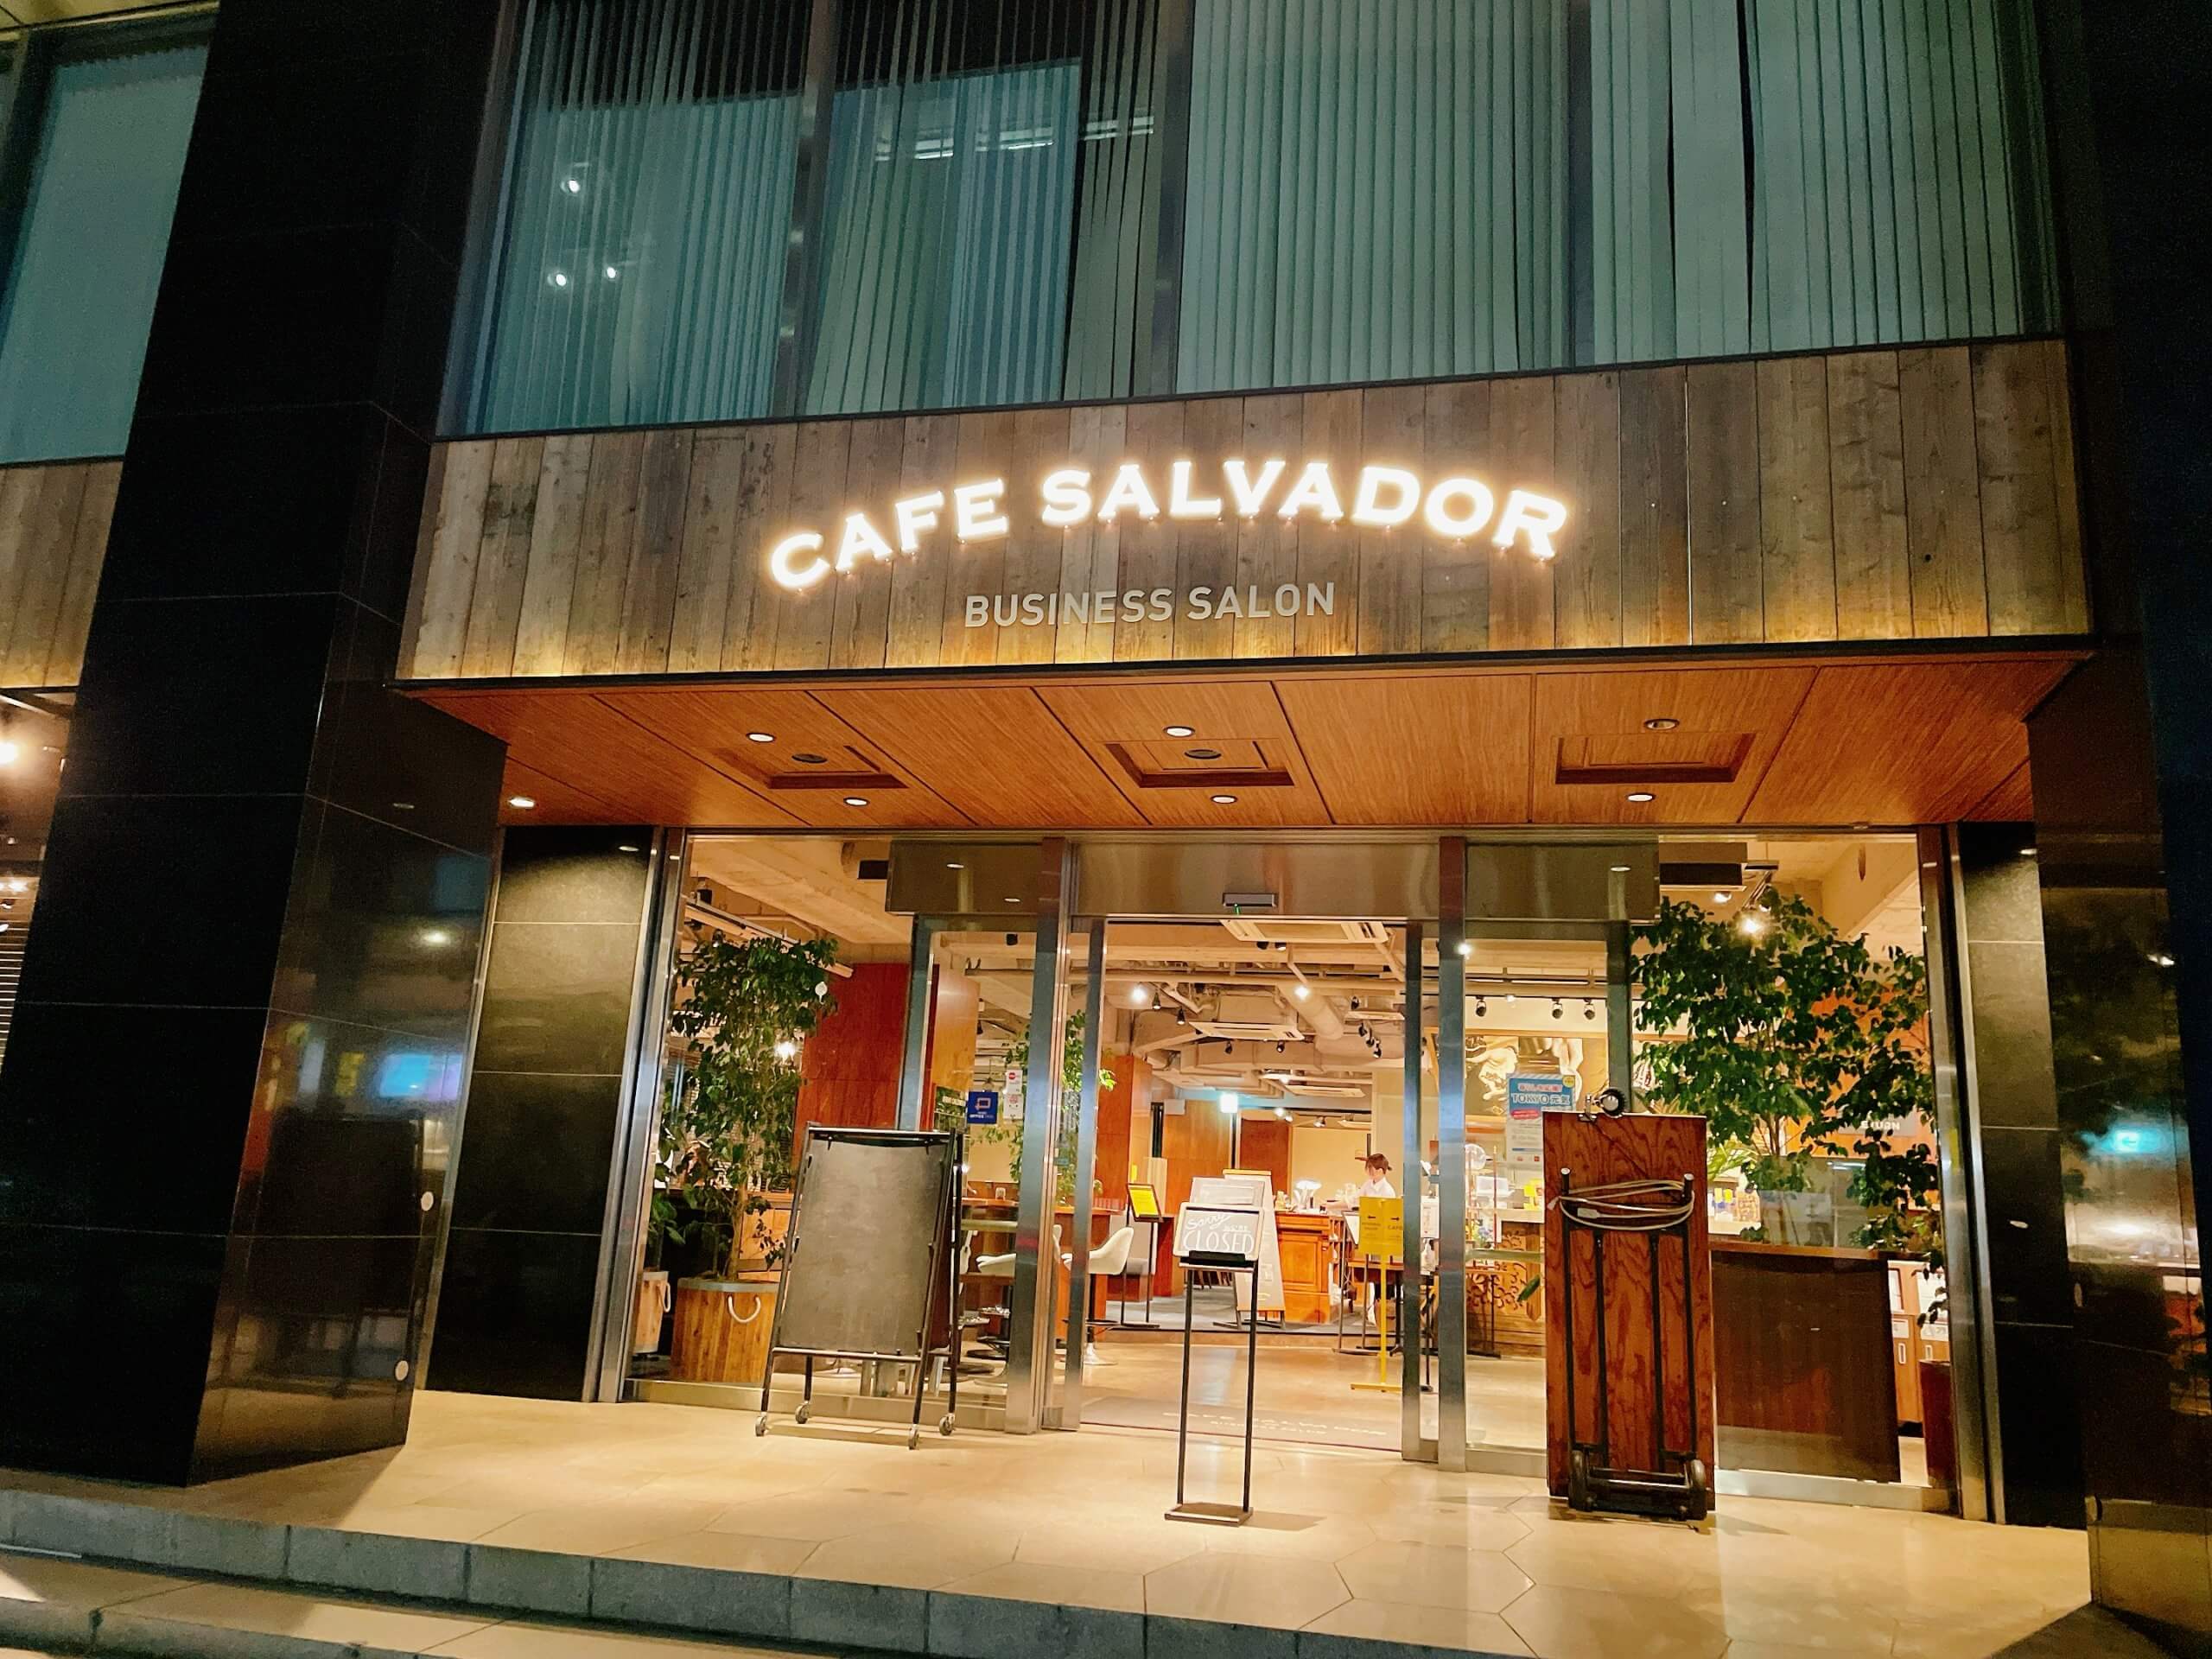 CAFE SALVADOR